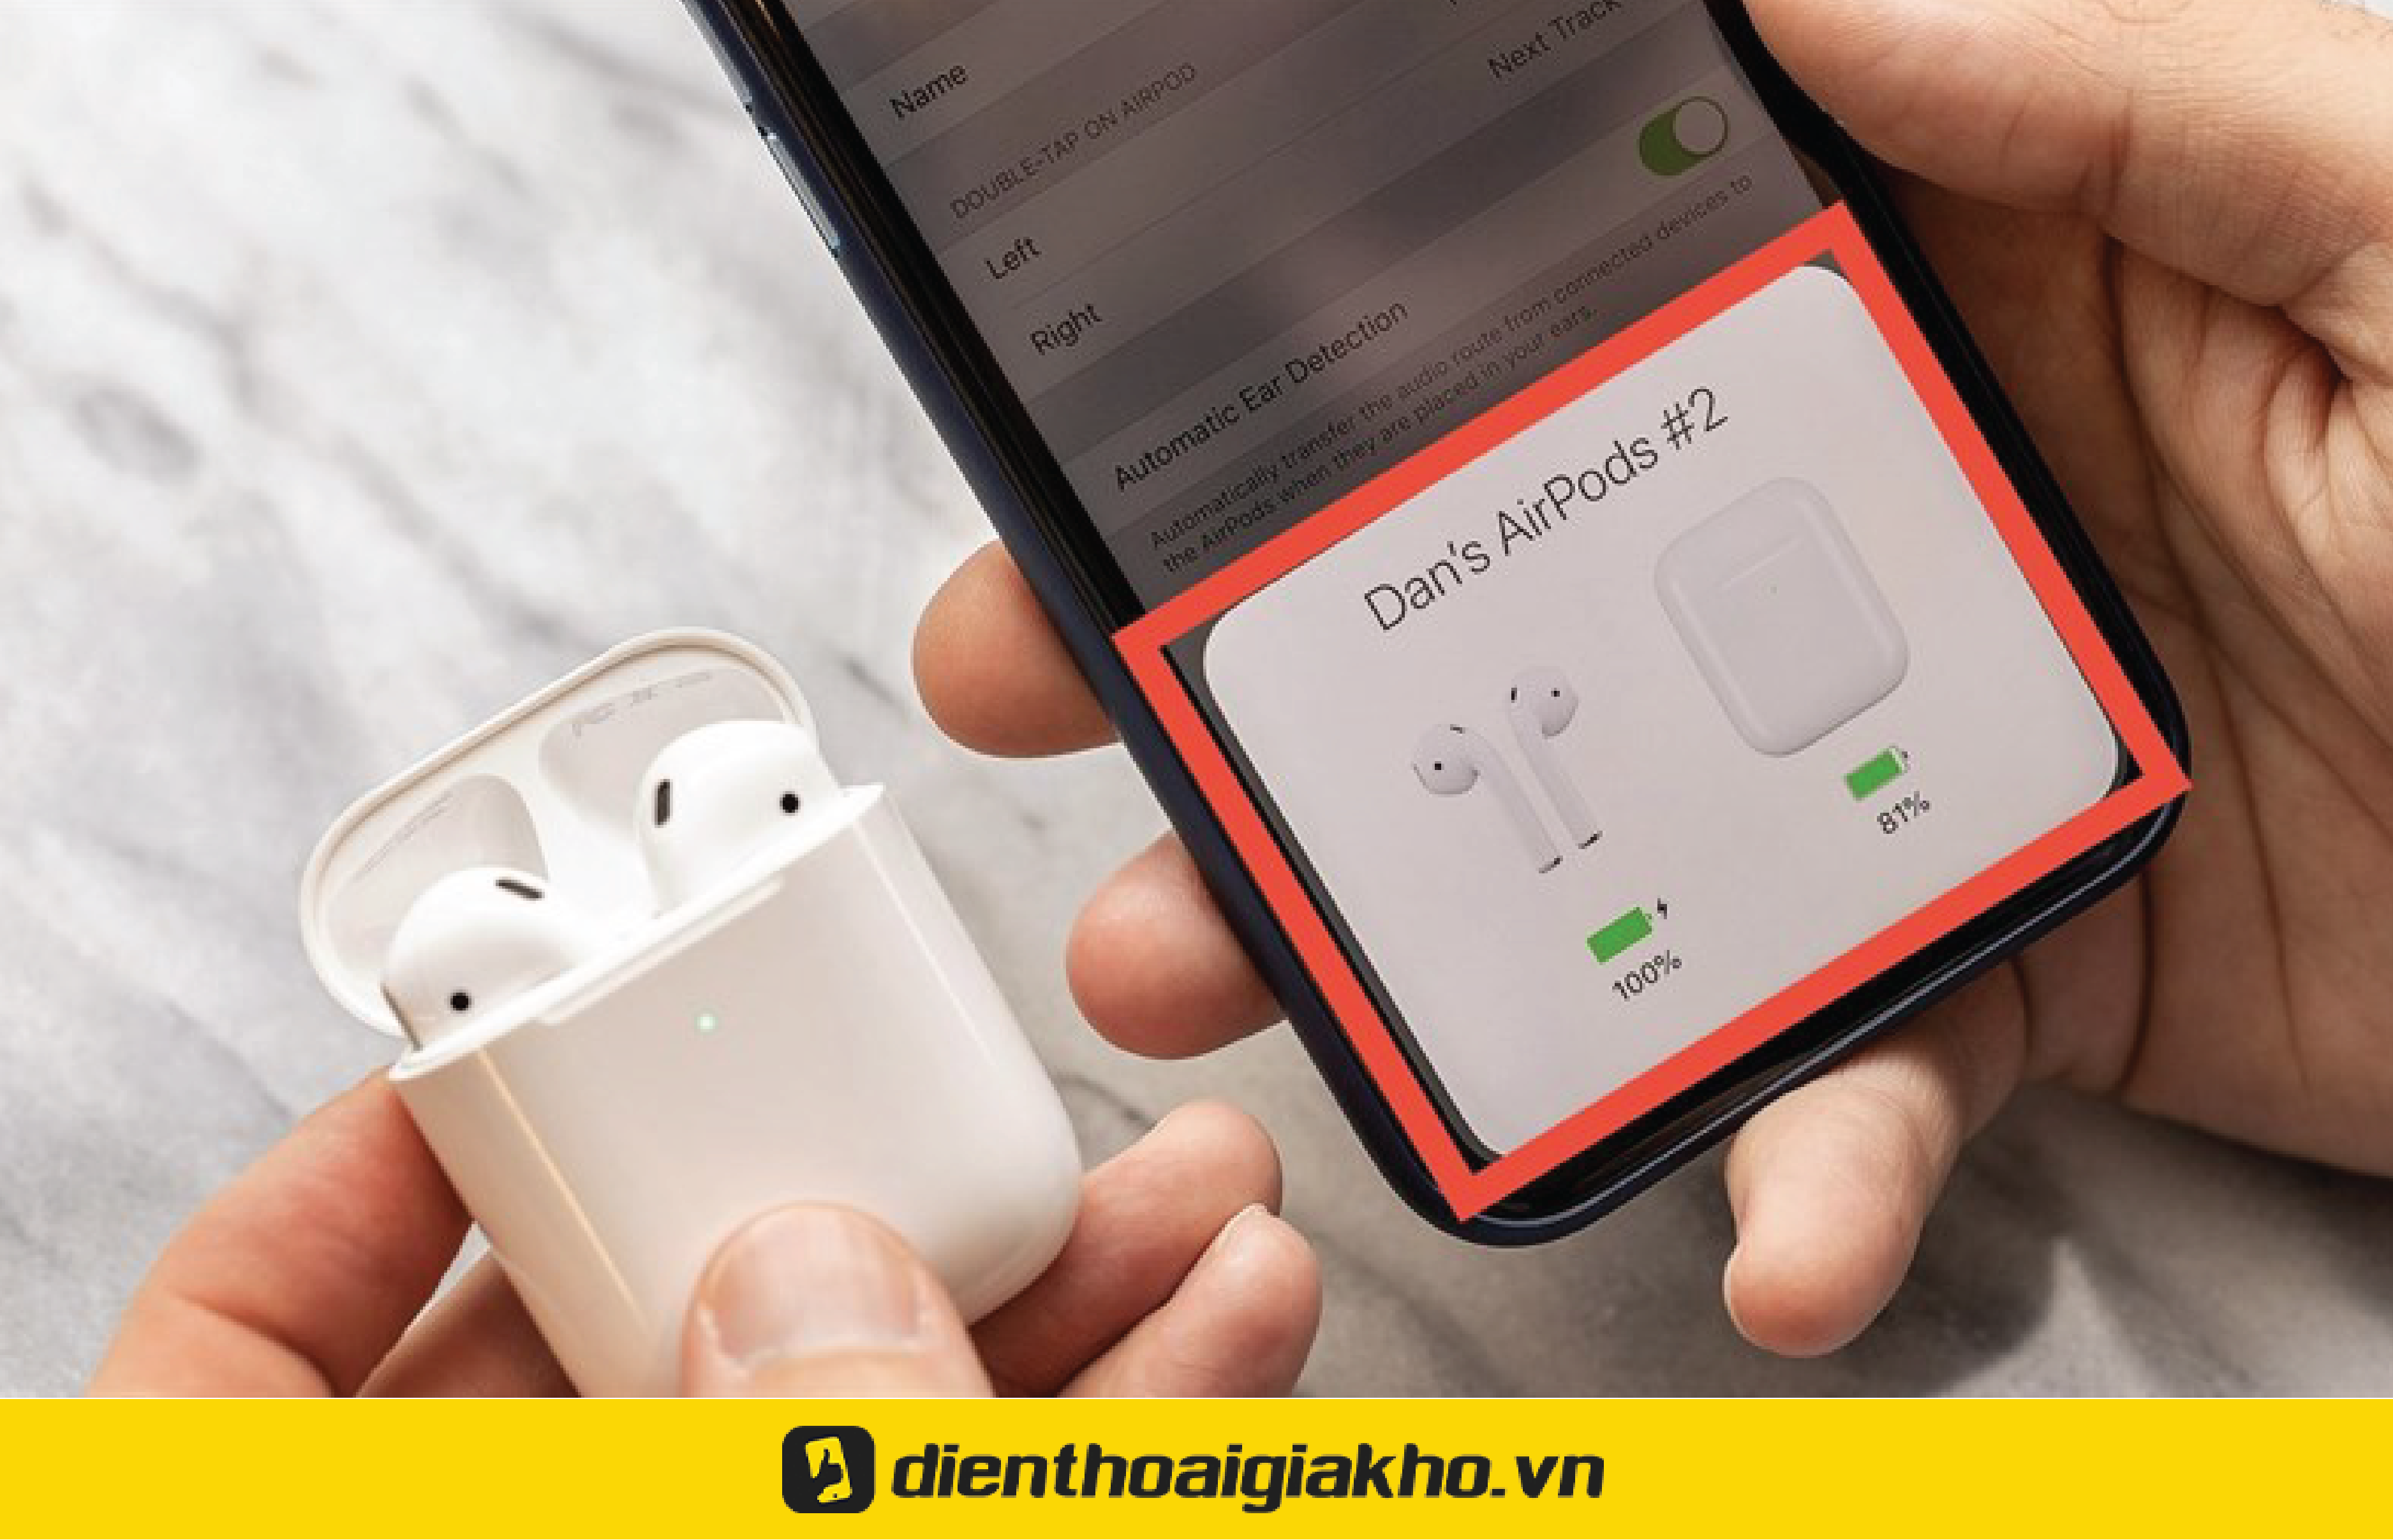 Hướng dẫn chi tiết cách kết nối Airpod với iPhone | Hoàng Hà Mobile